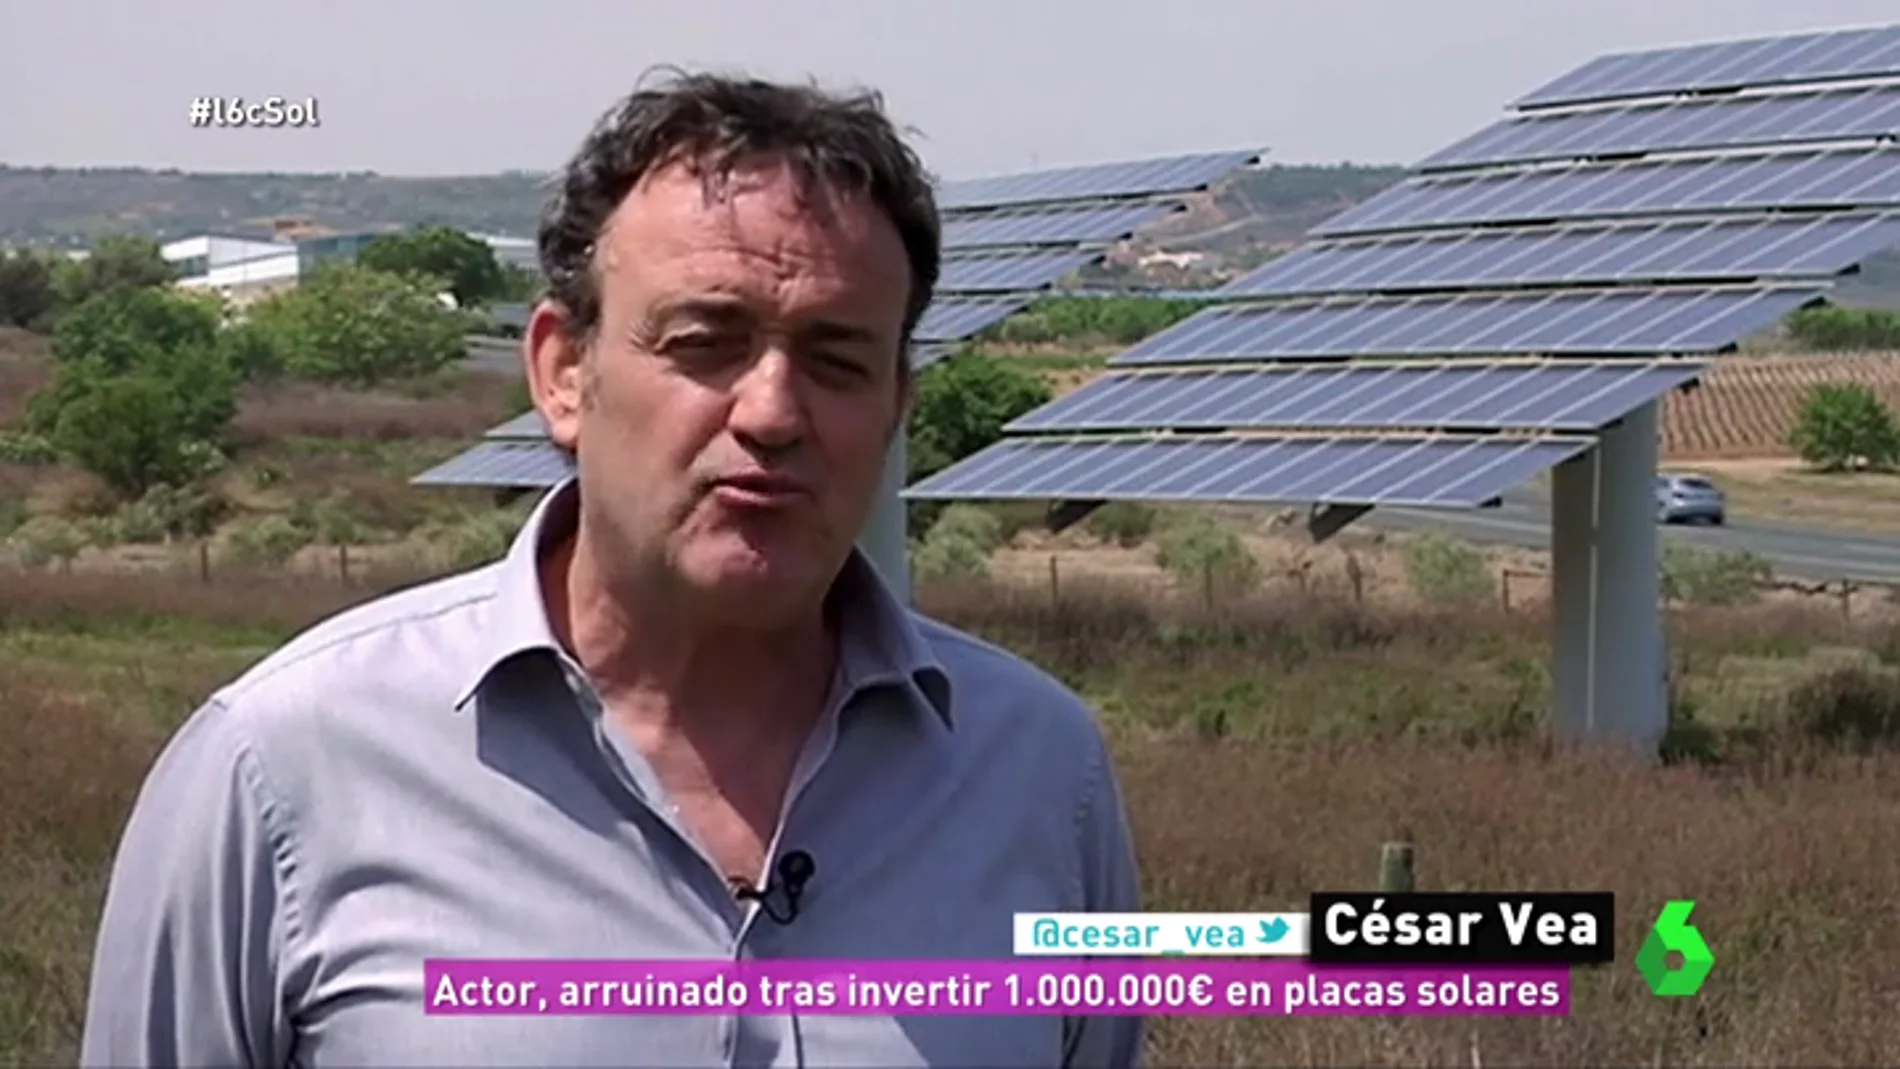 César Vea, el actor que perdió más de 800.000 euros por invertir en huertos solares